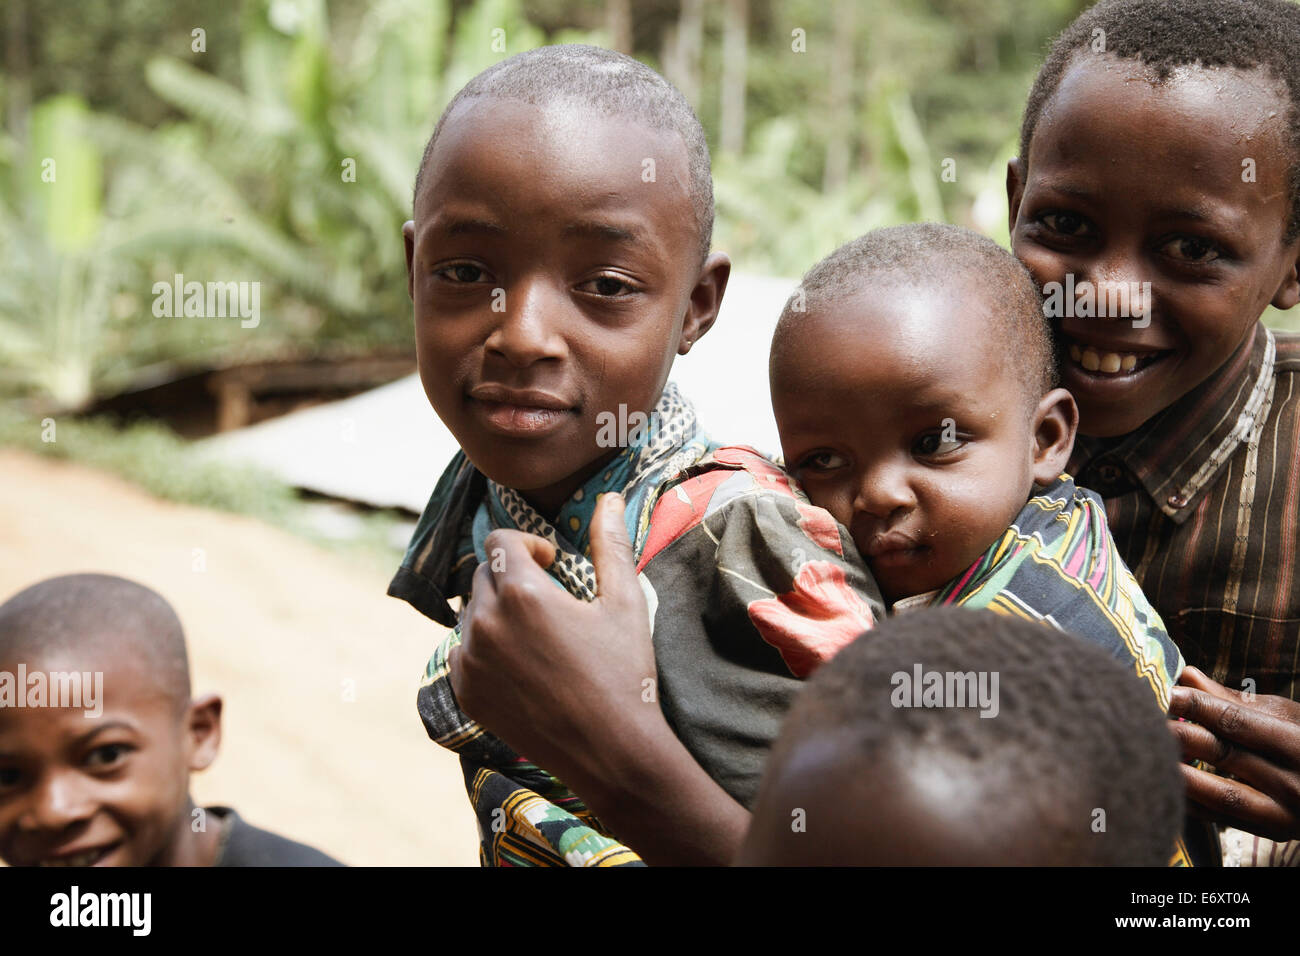 Children, Usambara Mountains, Tanga region, Tanzania Stock Photo